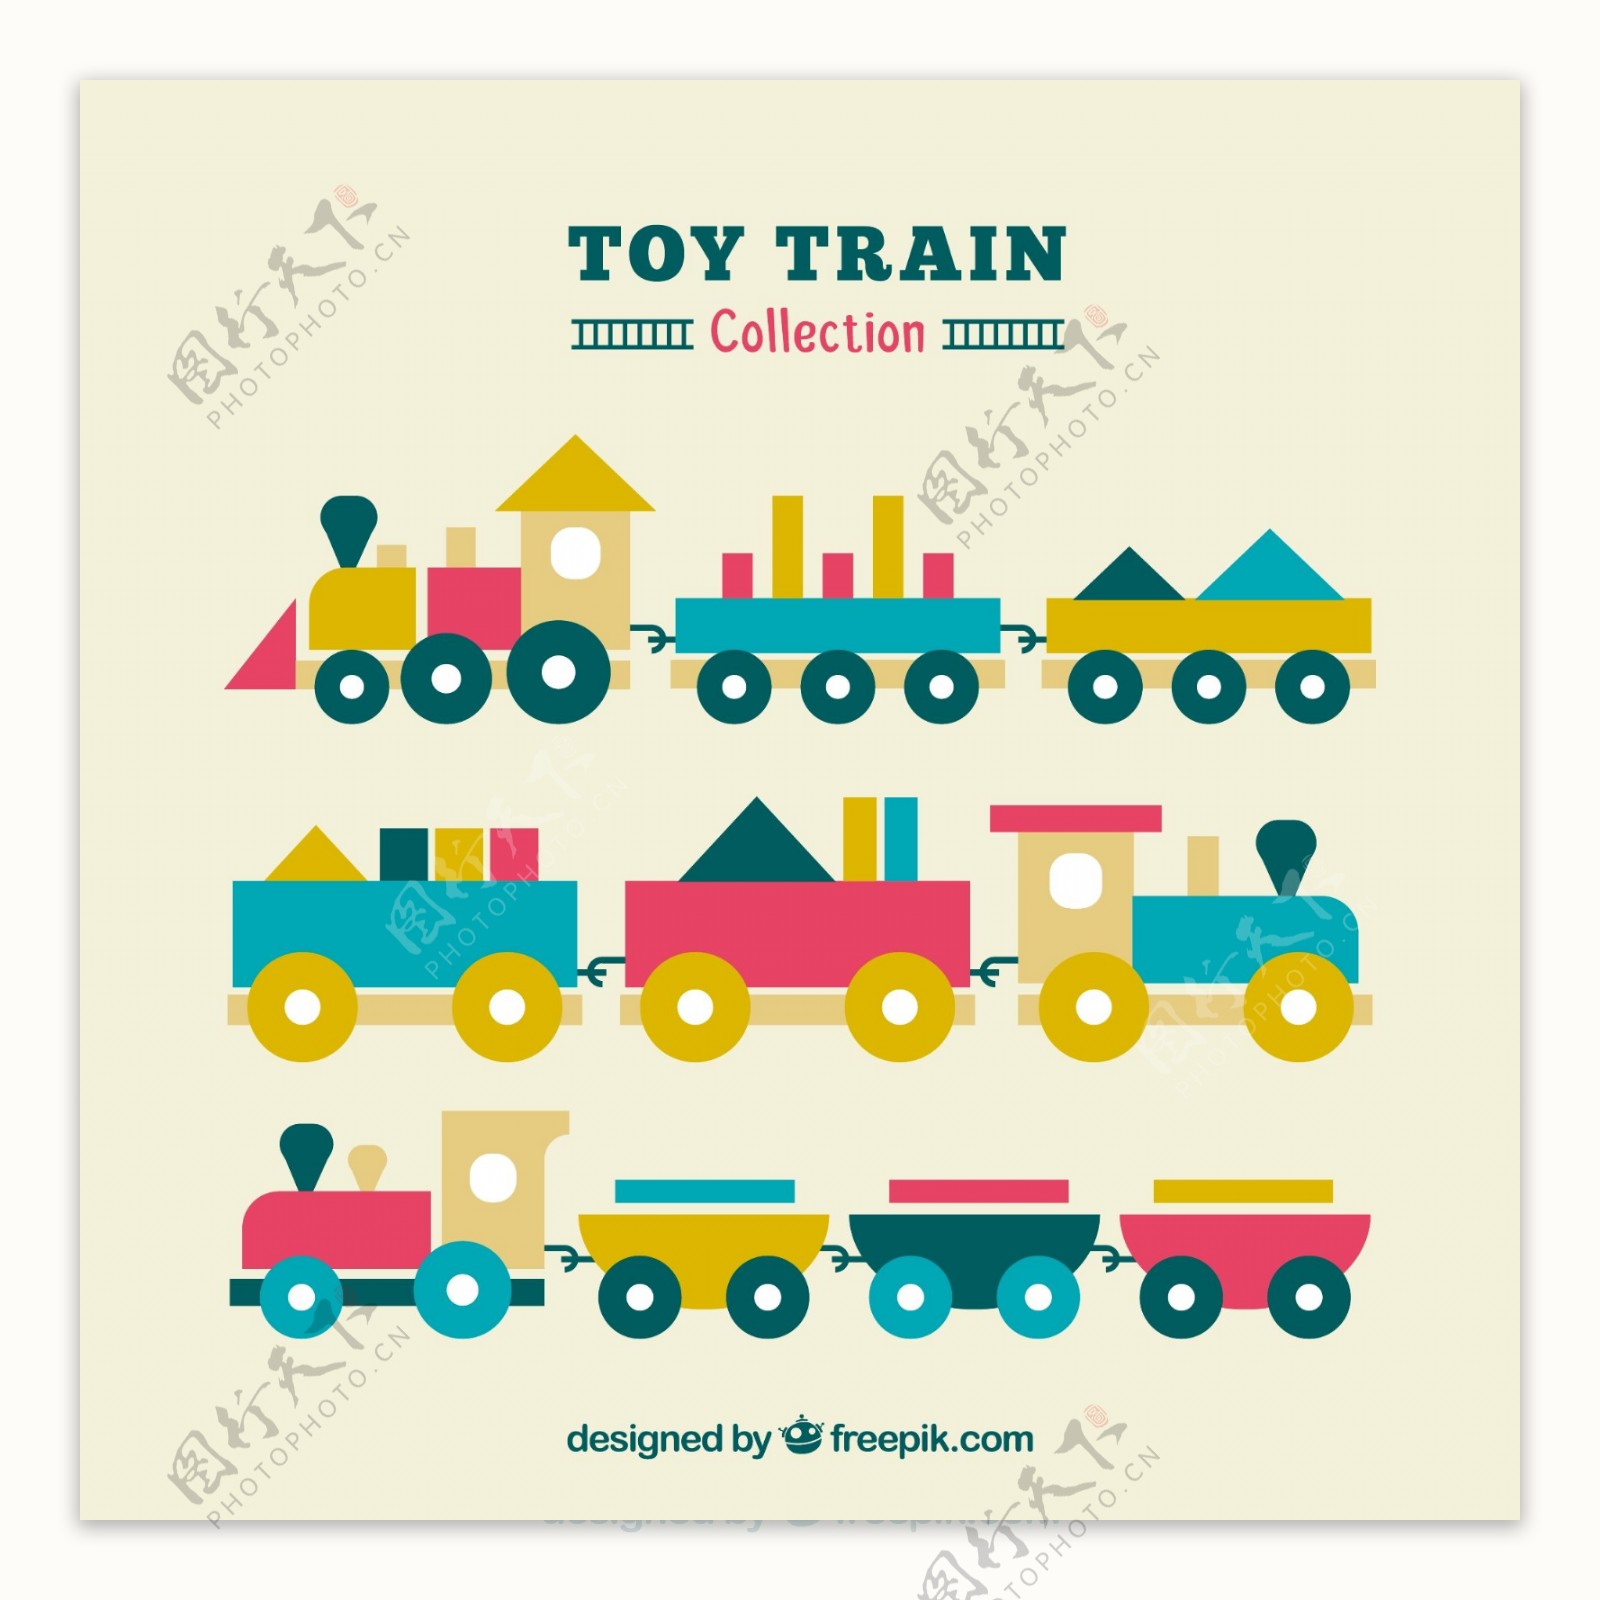 三个扁平风格的玩具火车插图